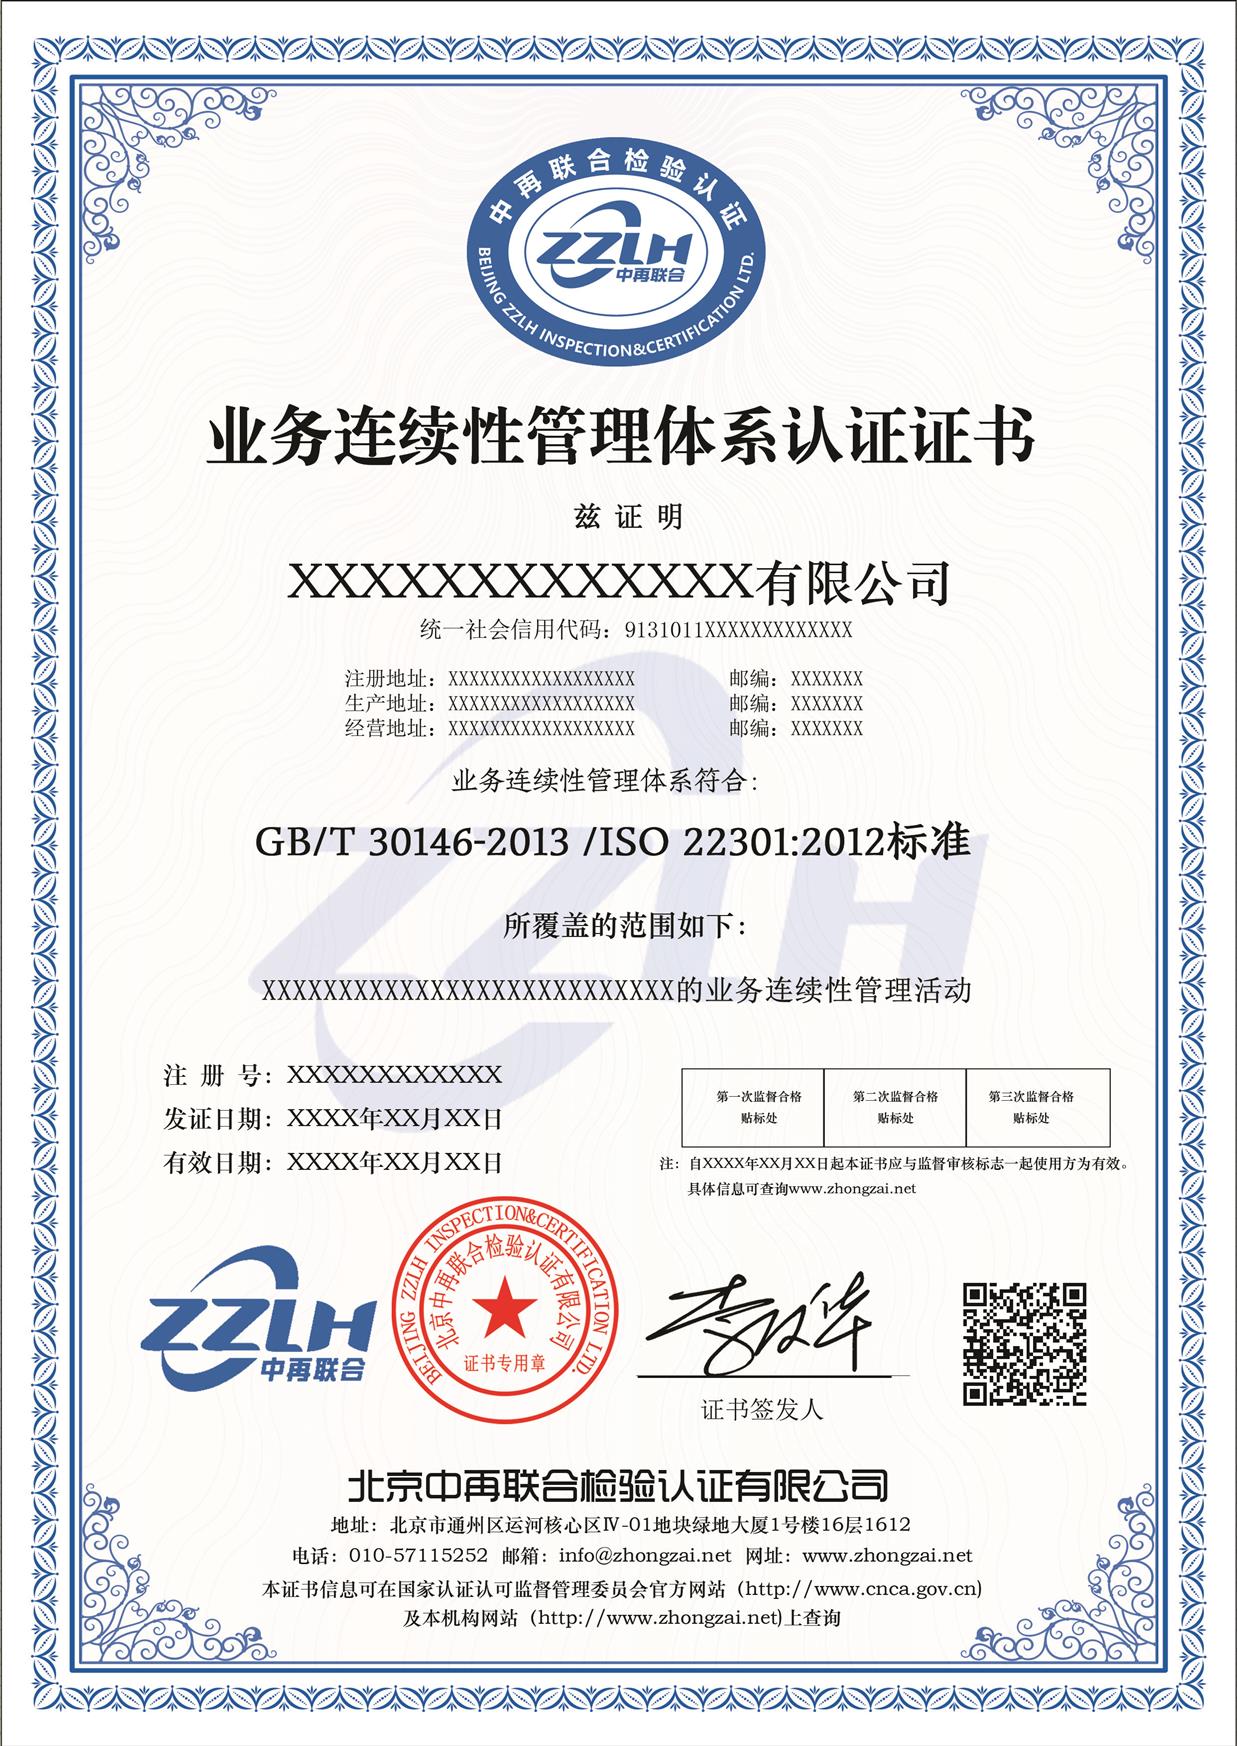 ISO22301业务连续性管理体系 木材行业 柳州业务连续性管理体系认证